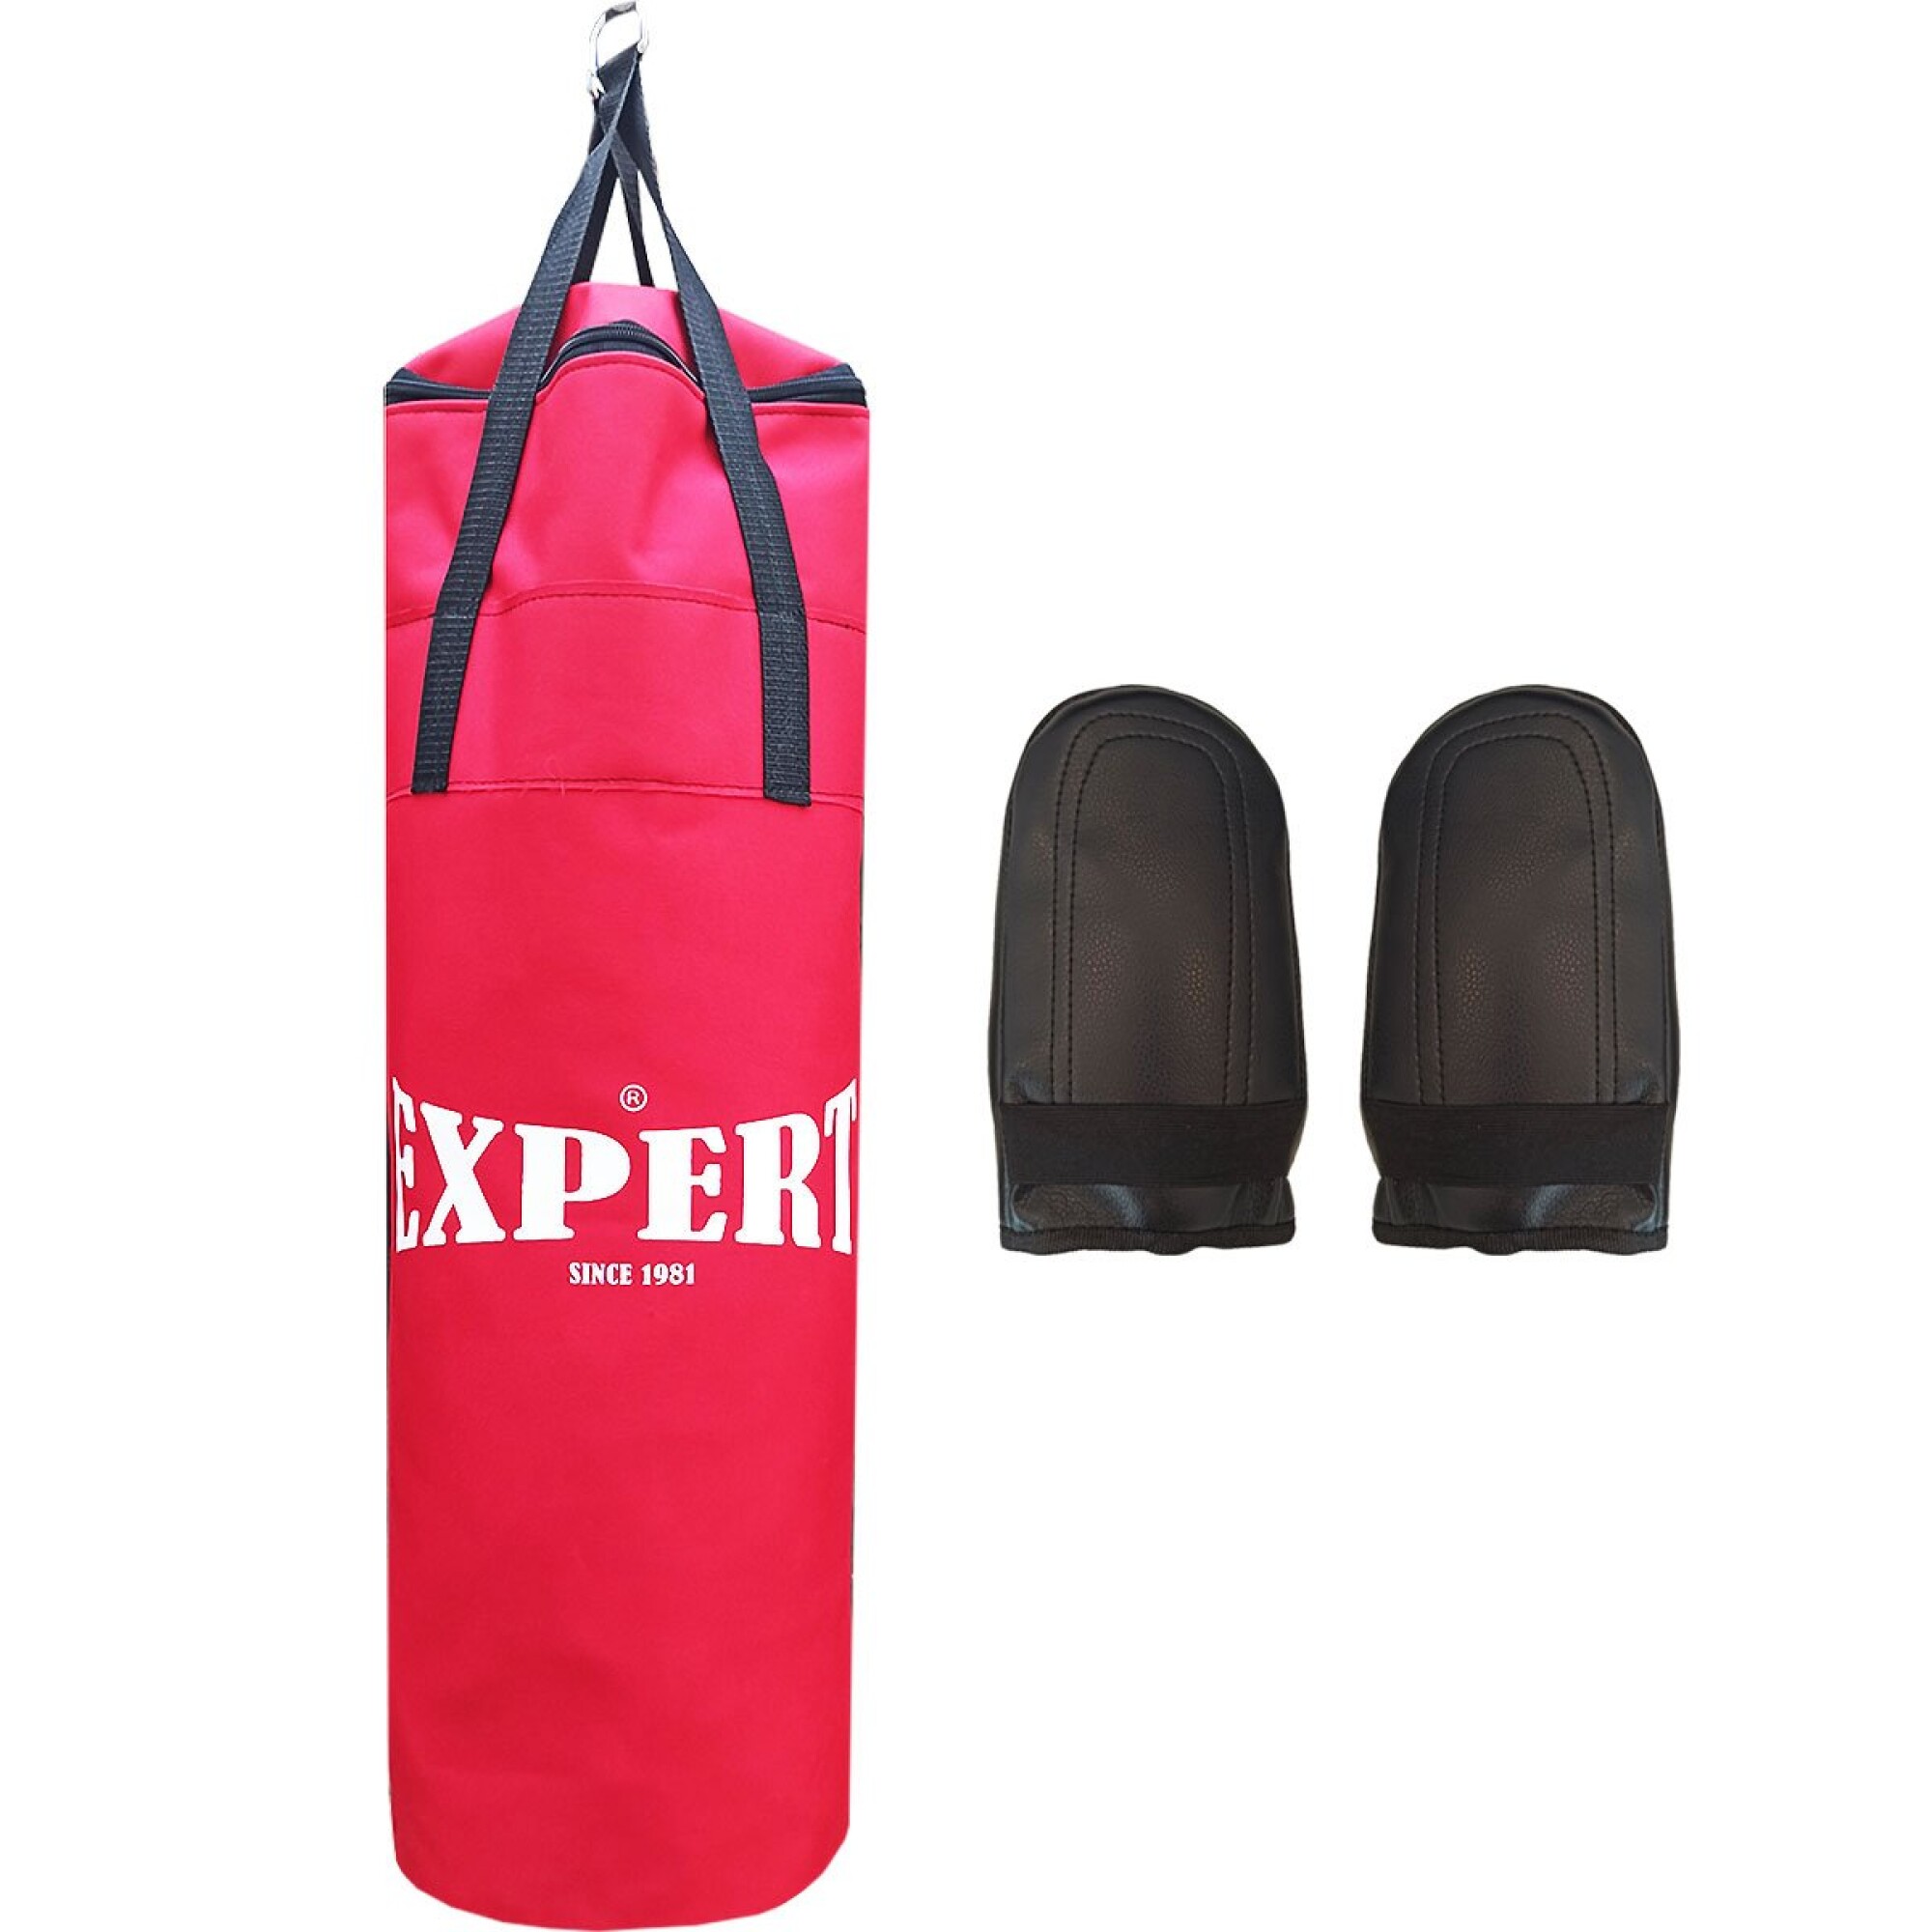 Set saco de boxeo kit con guantes para niño pera - Canela Hogar